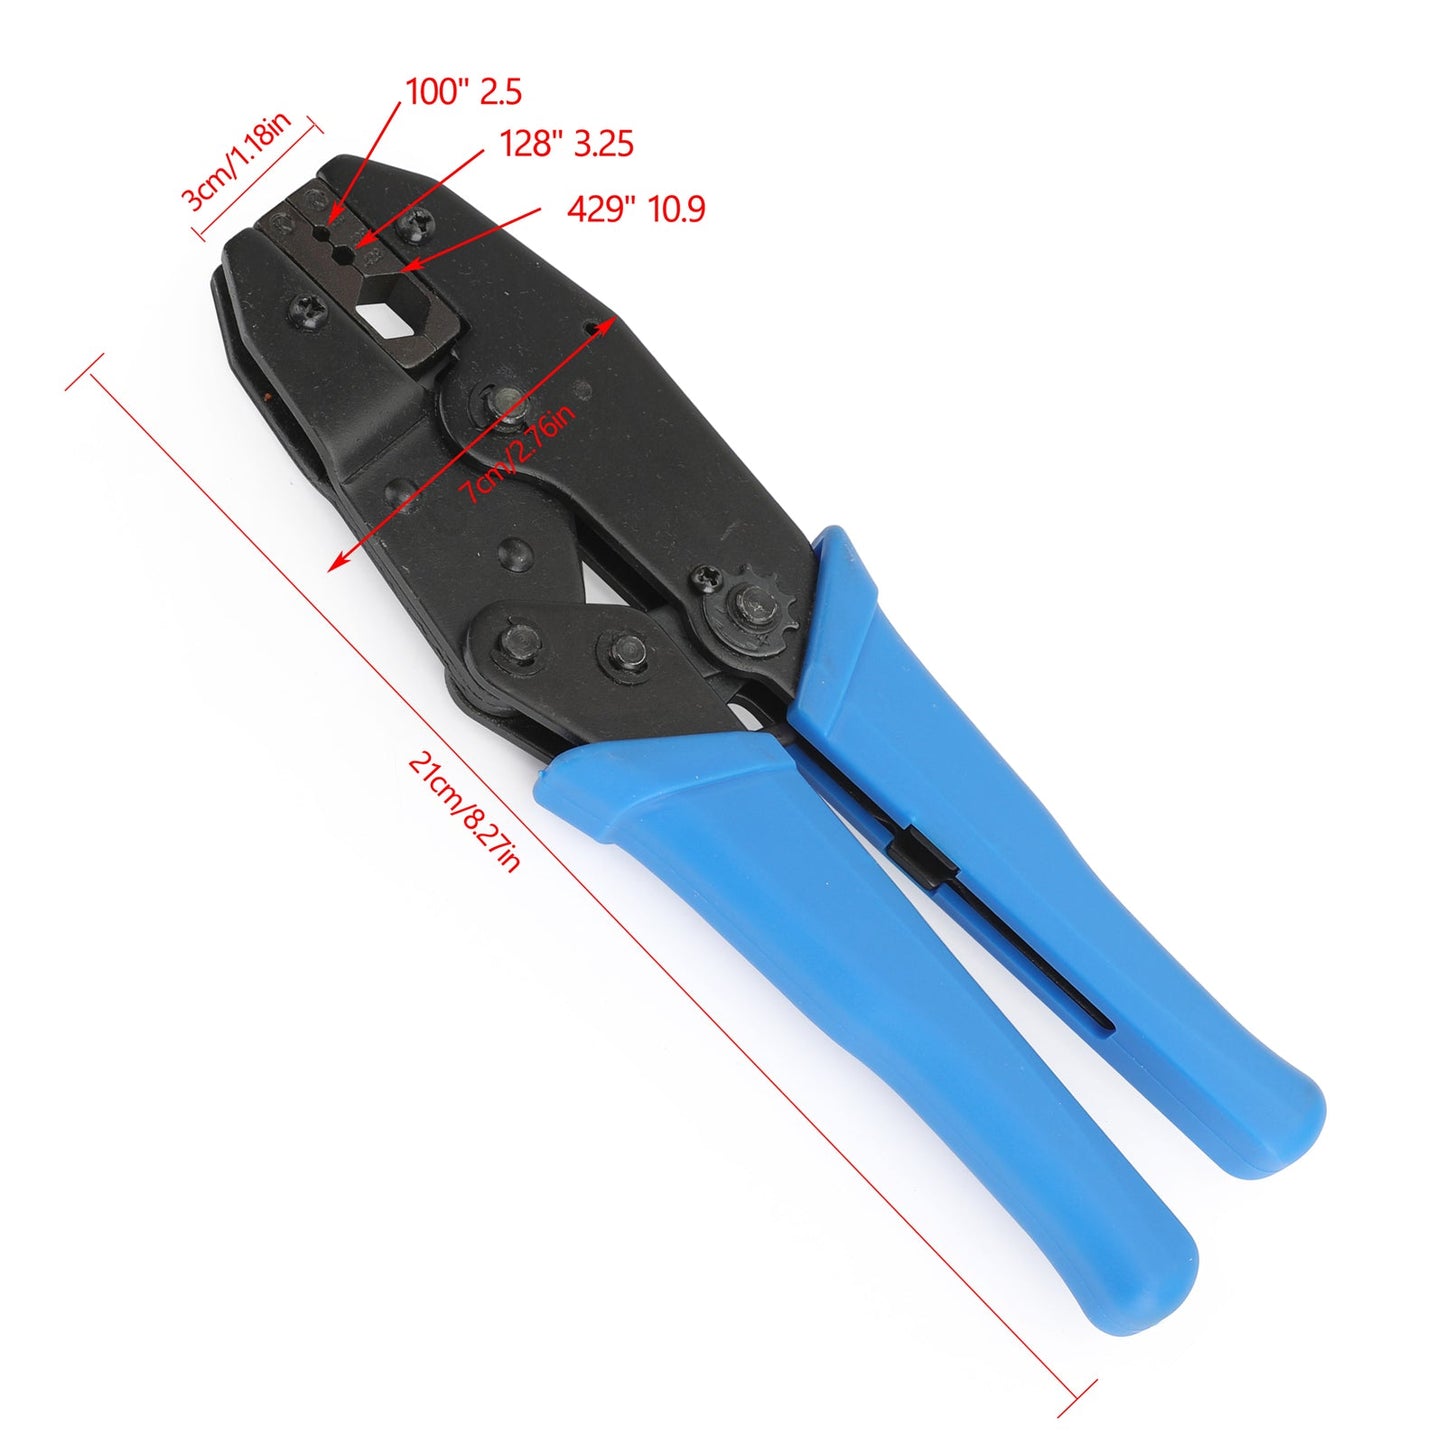 9" Professional Hex Crimping Tool For F-pin/Coax/BNC SMA Connectors etc.